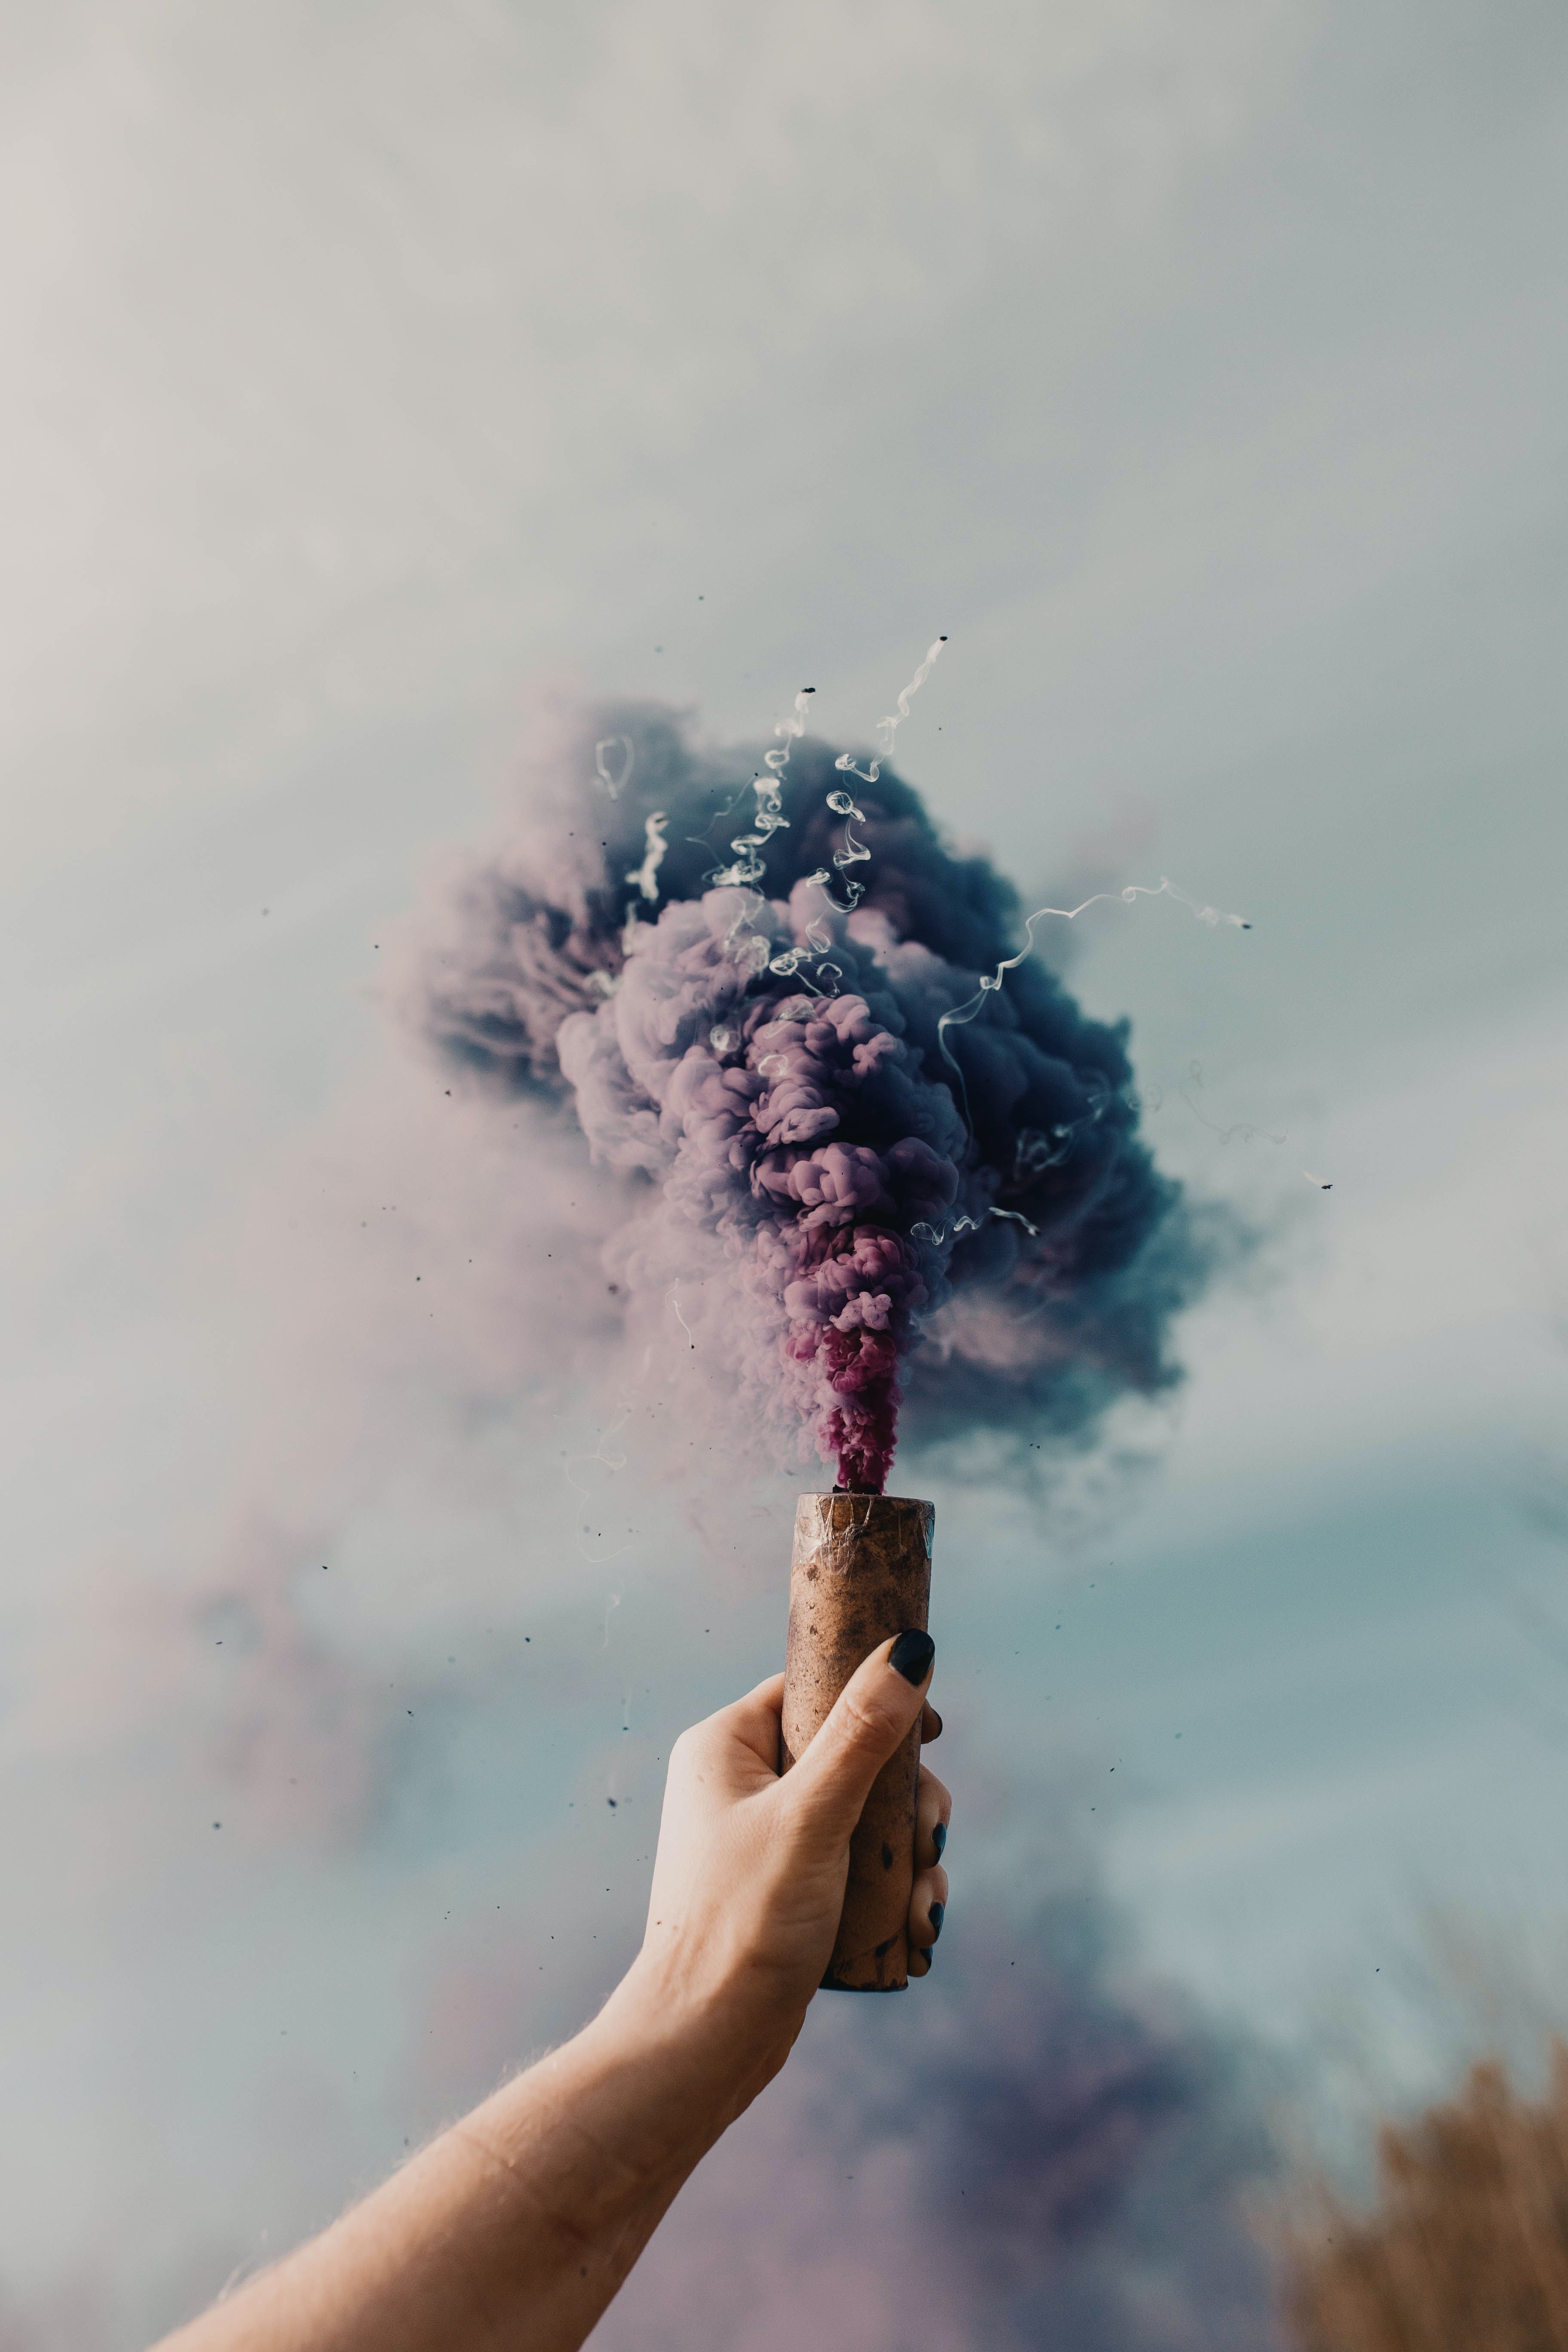 A person holding up some purple smoke - Smoke